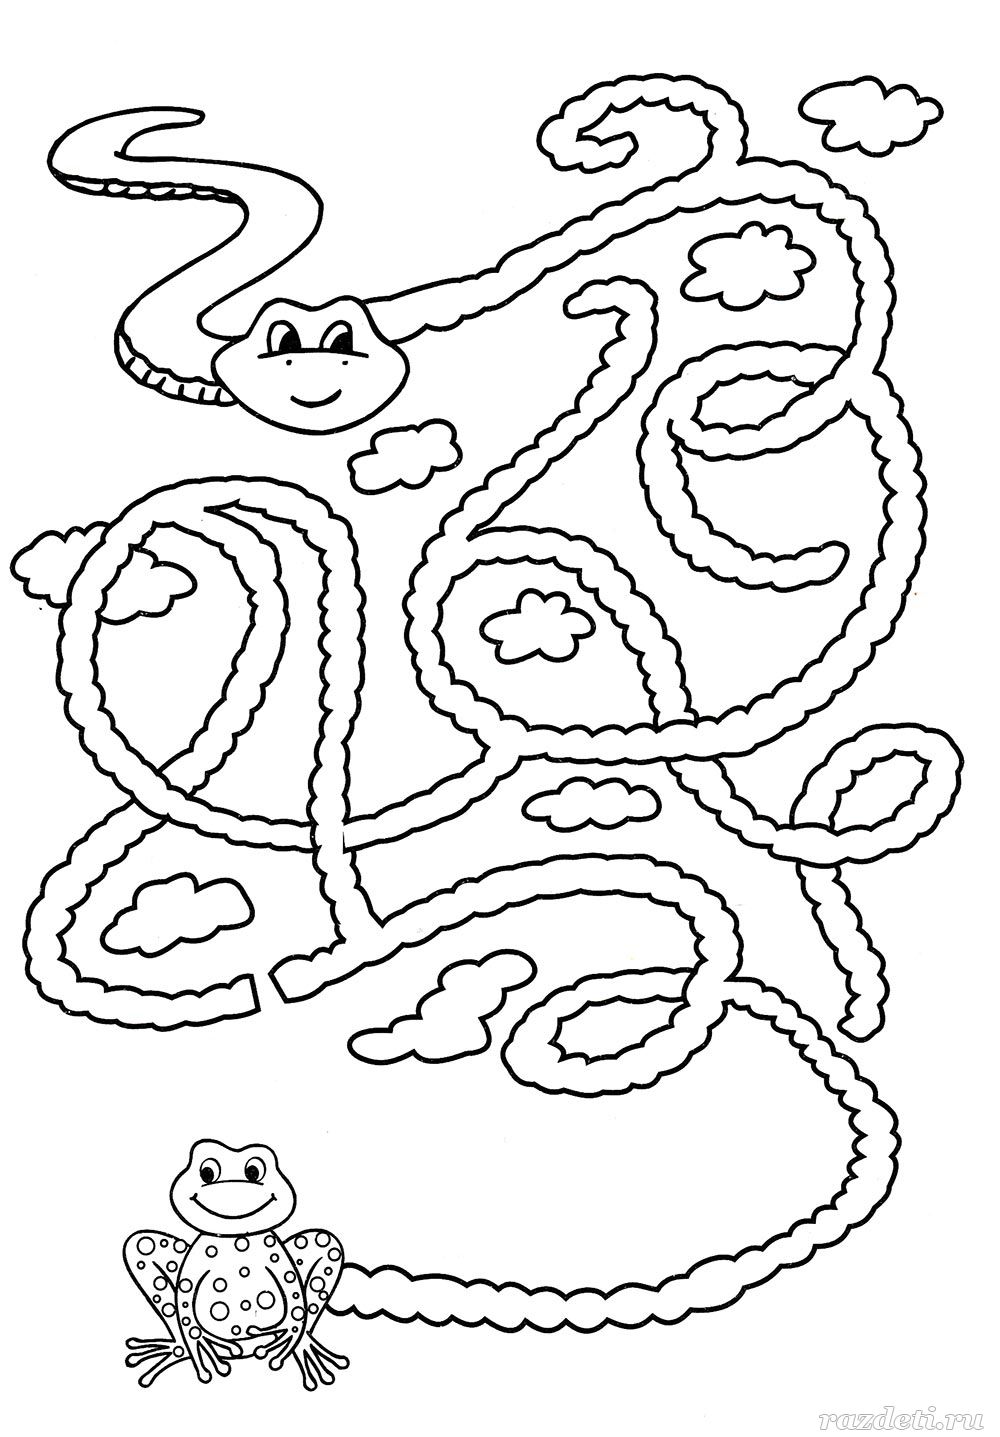 Лабиринт змейка для детей